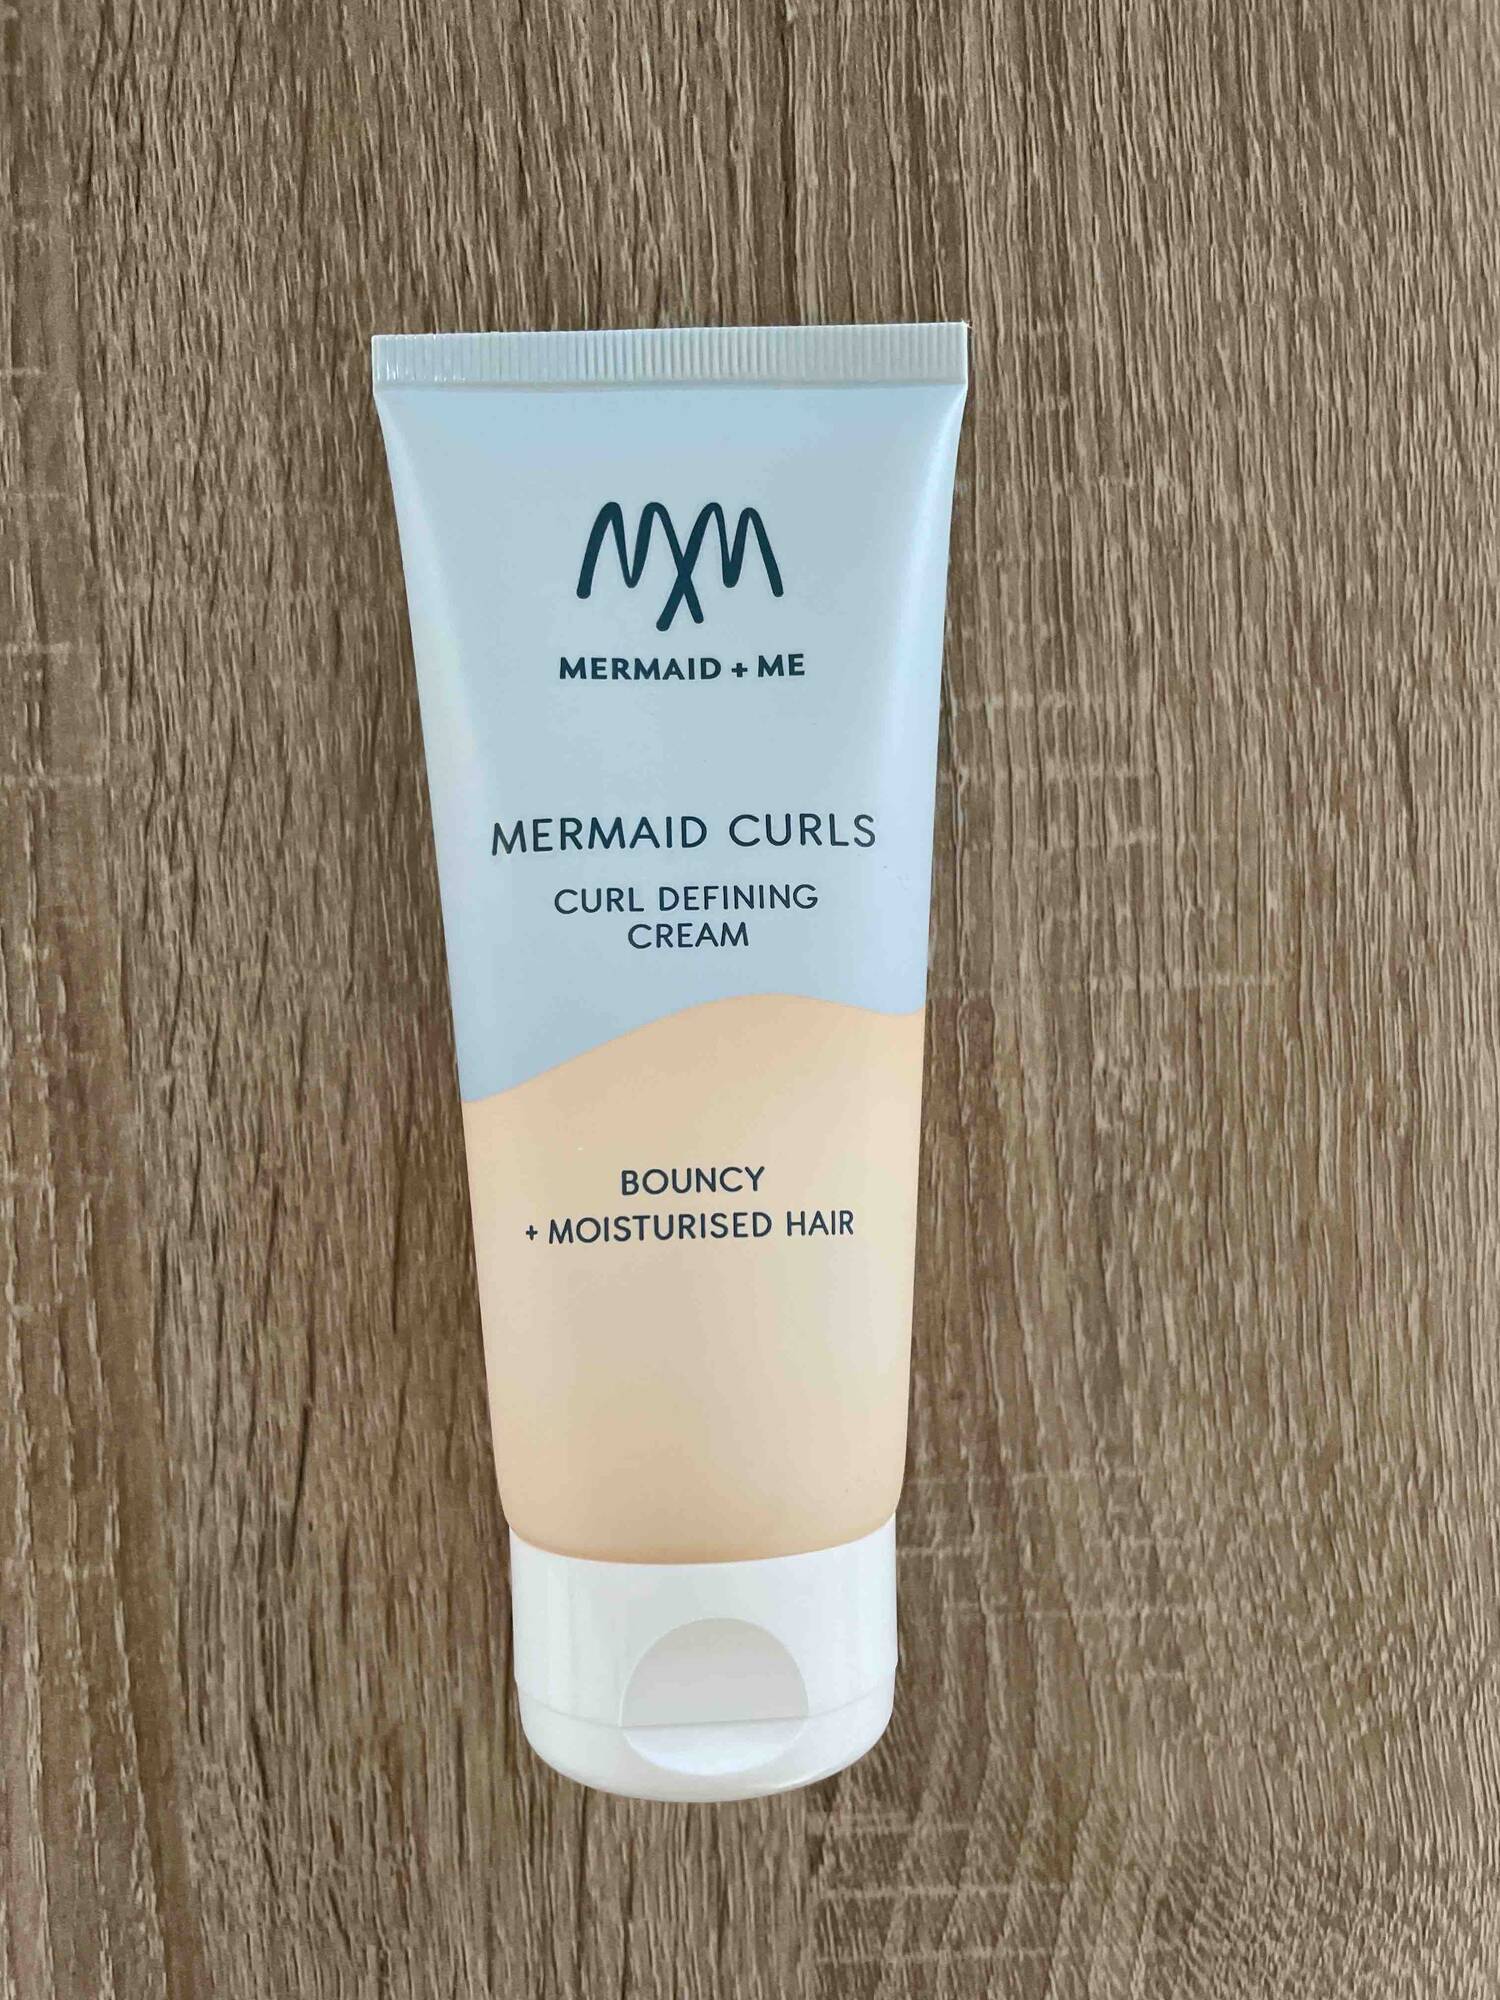 MERMAID + ME - Mermaid curls - Curl defining cream